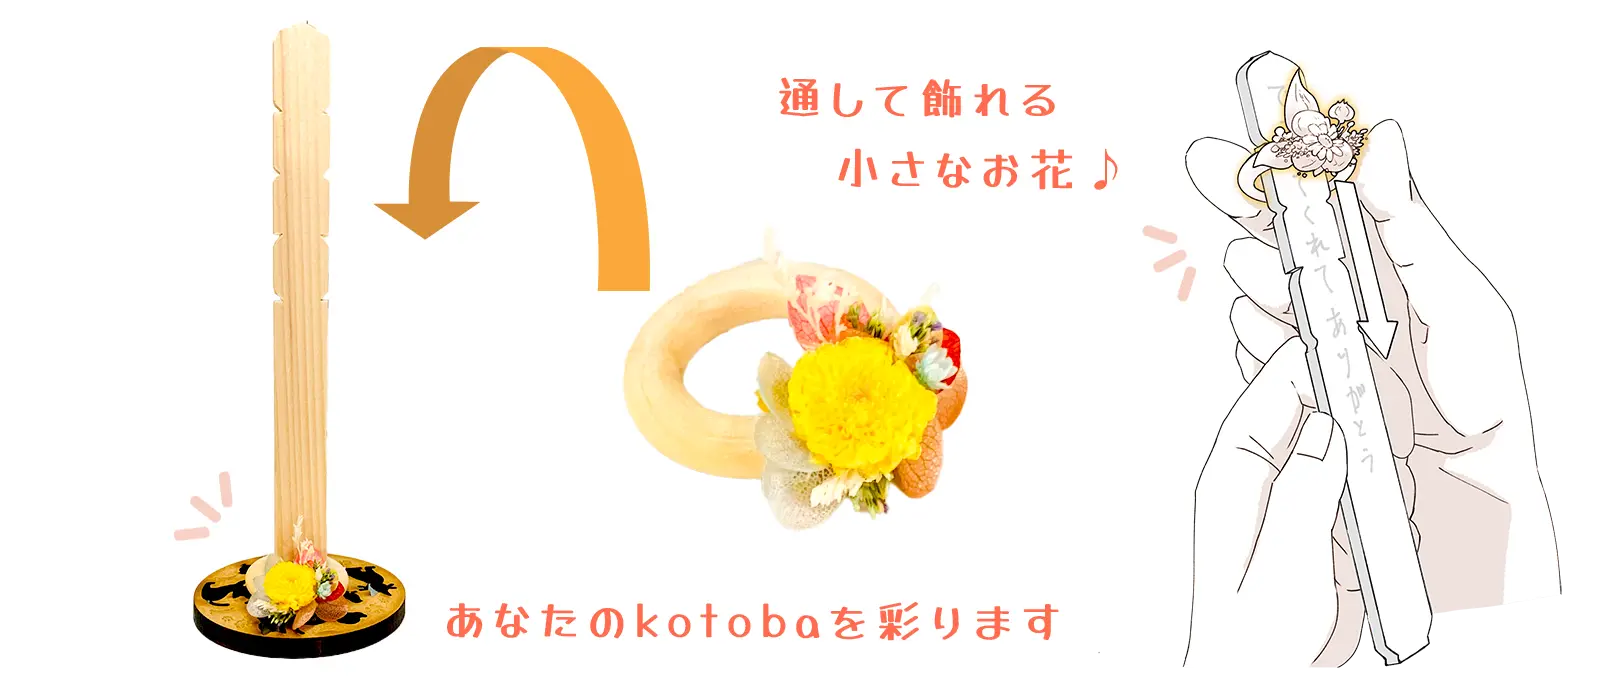 和花についての図説です。kotobaの木の板に和花の輪を通して、一緒に飾ります。通して飾れる小さなお花が、あなたのkotobaを彩ります。